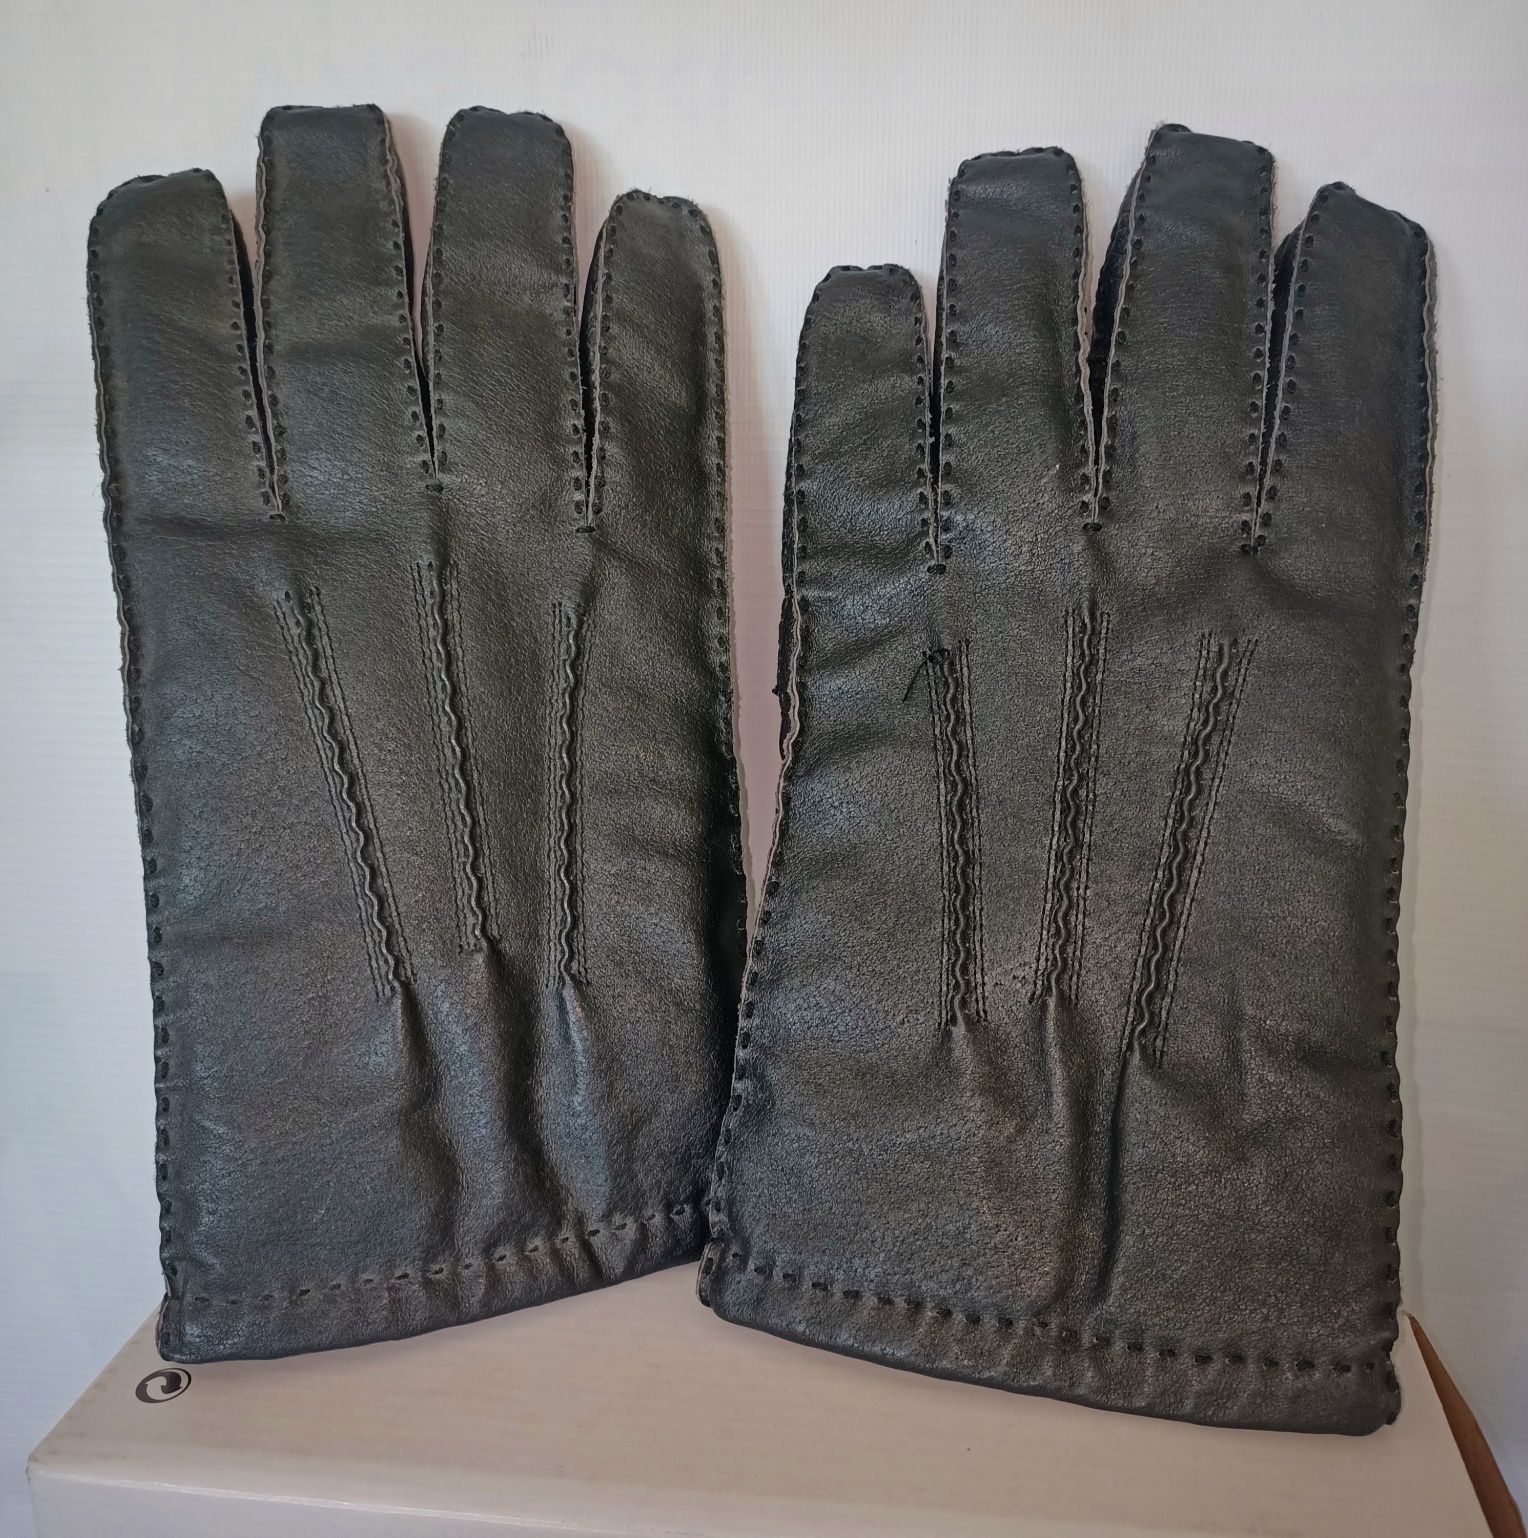 Rękawiczki skórzane eleganckie męskie r.M 26,5x13cm